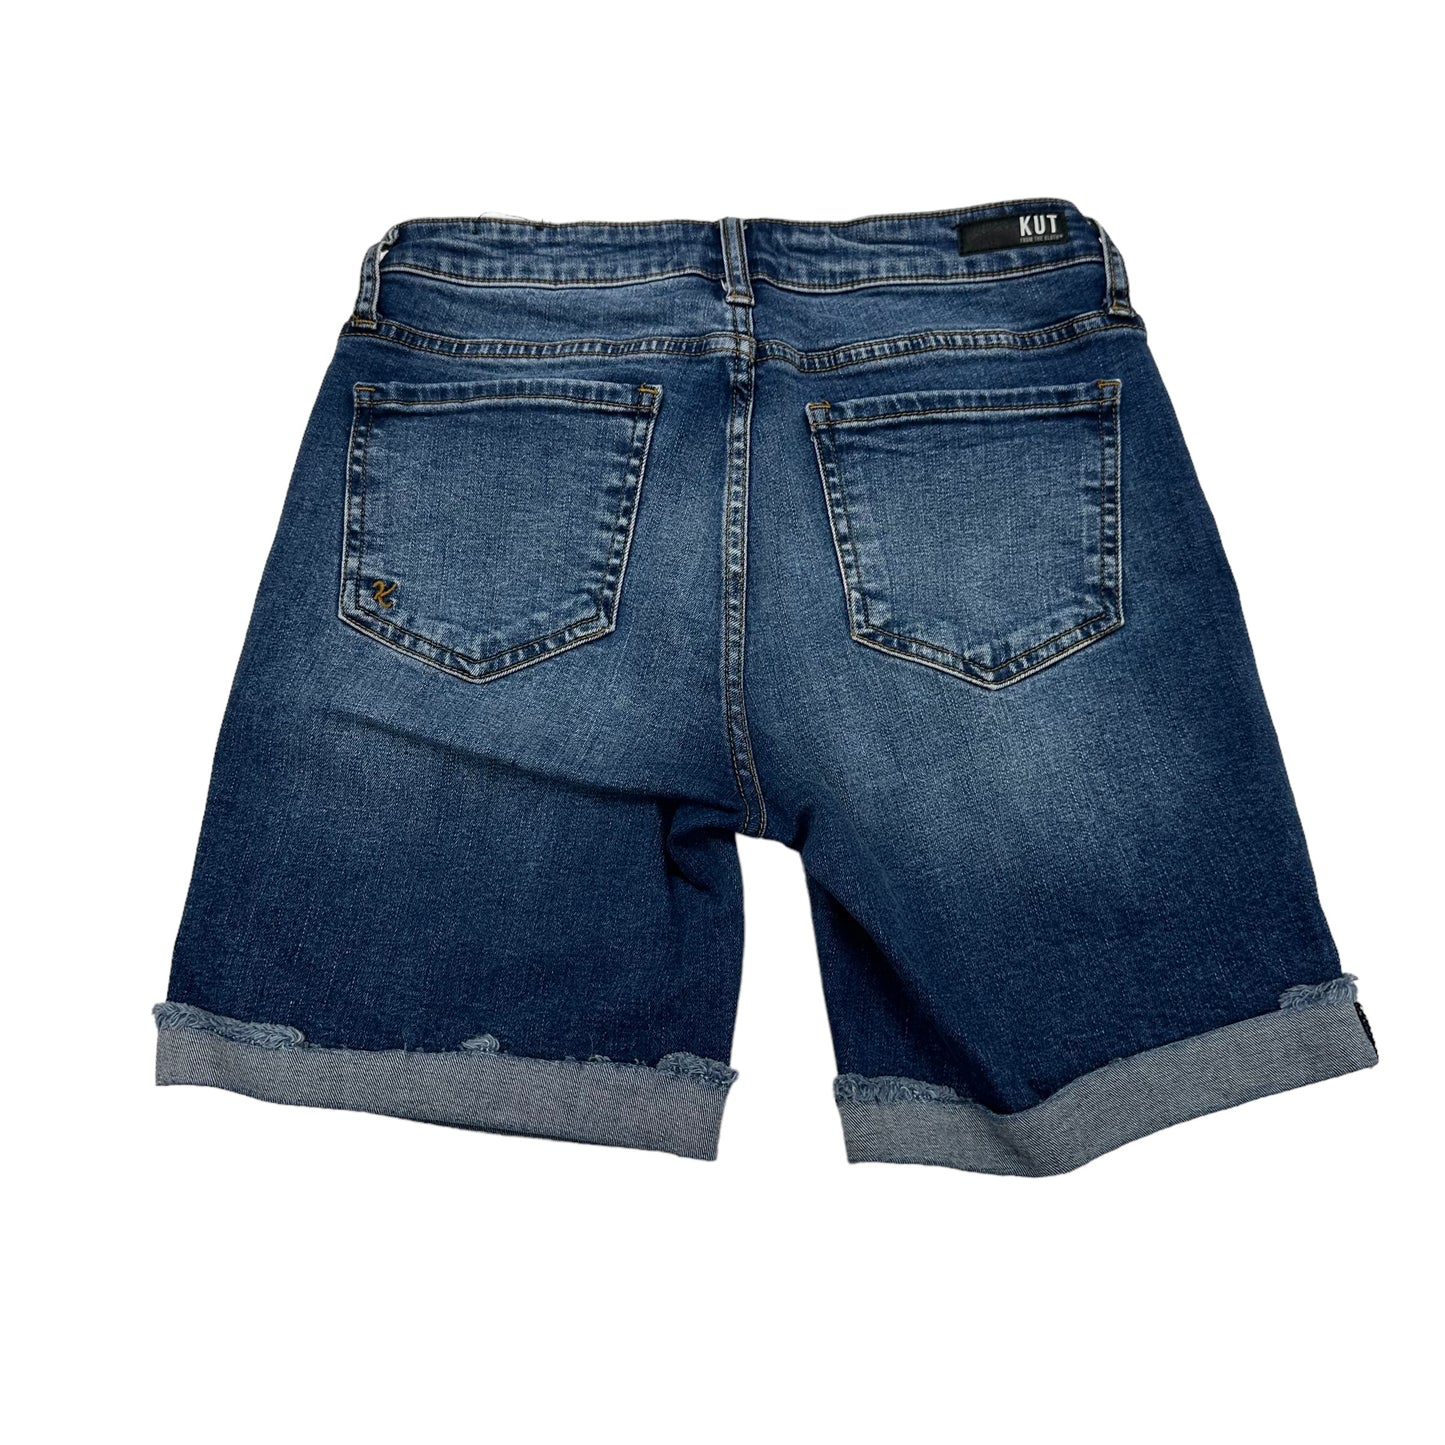 Shorts By Kut  Size: 0